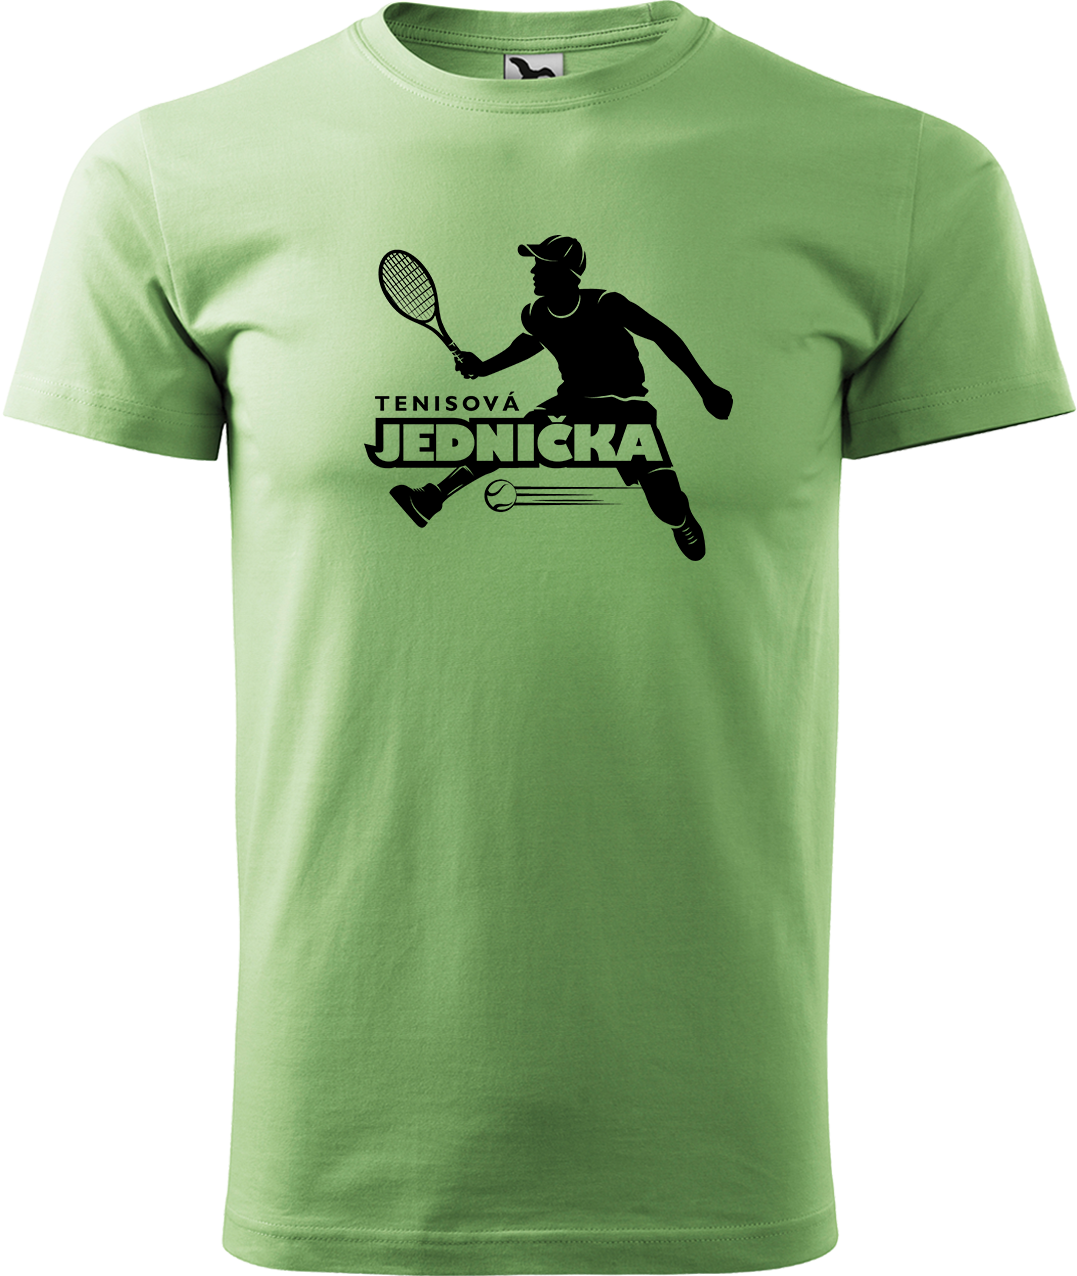 Tenisové tričko - Tenisová jednička Velikost: XL, Barva: Trávově zelená (39)